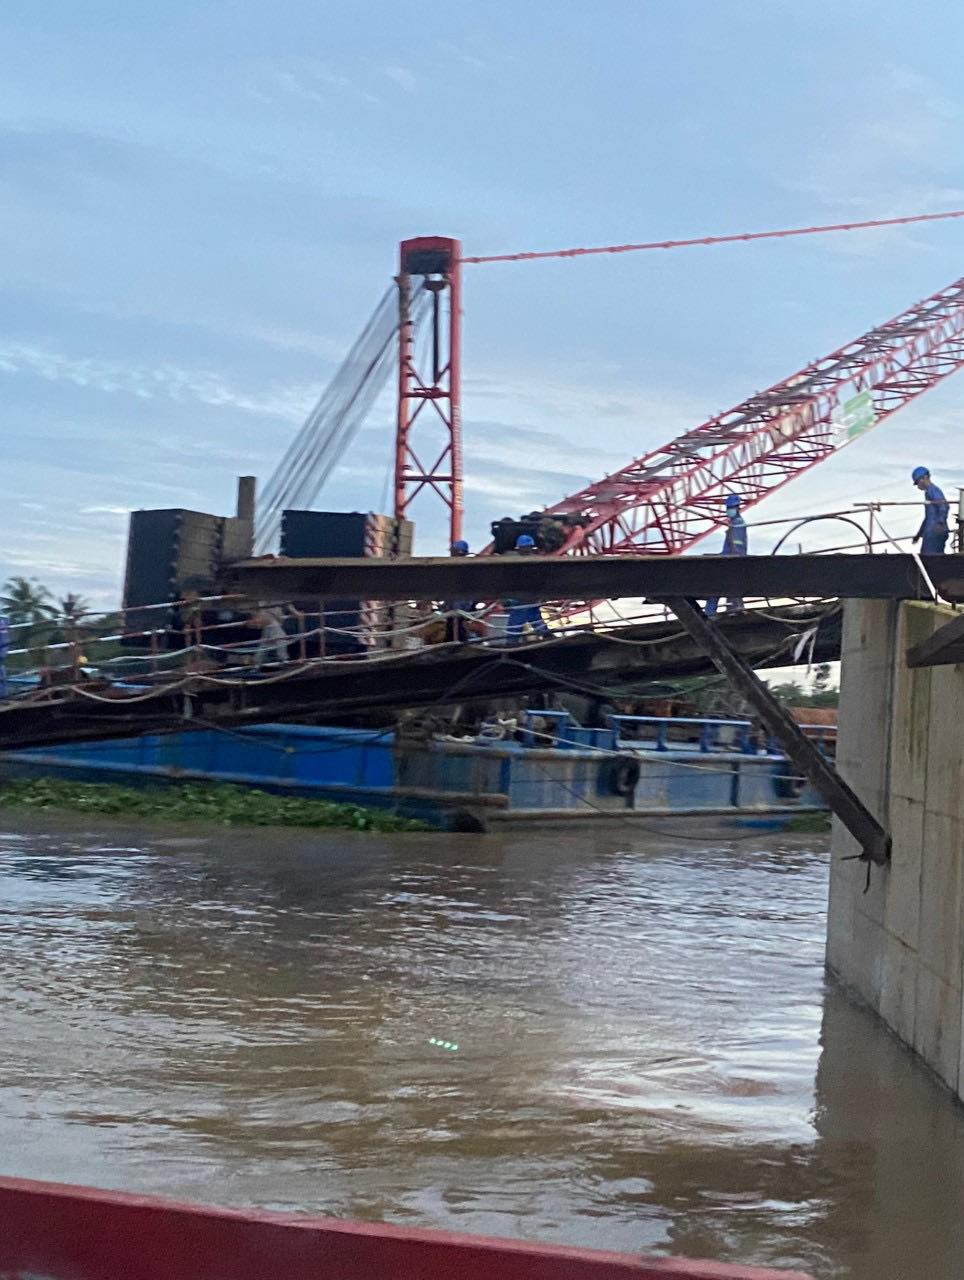 Sàn công tác phụ trợ thi công nơi các công nhân bị rơi xuống sông